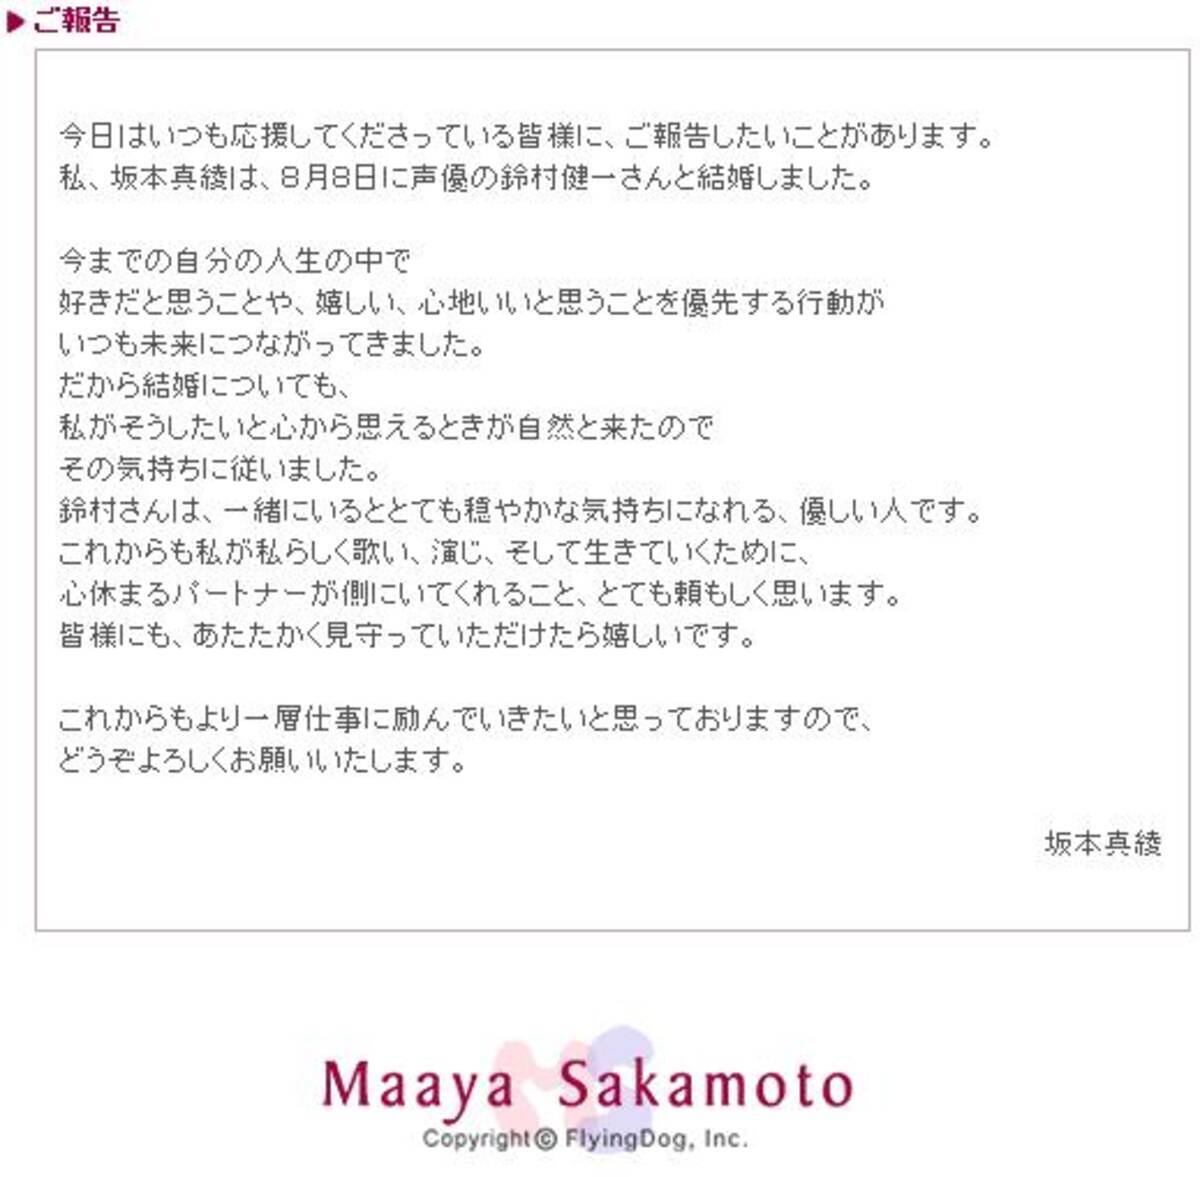 坂本真綾と鈴村健一が結婚 11年8月13日 エキサイトニュース